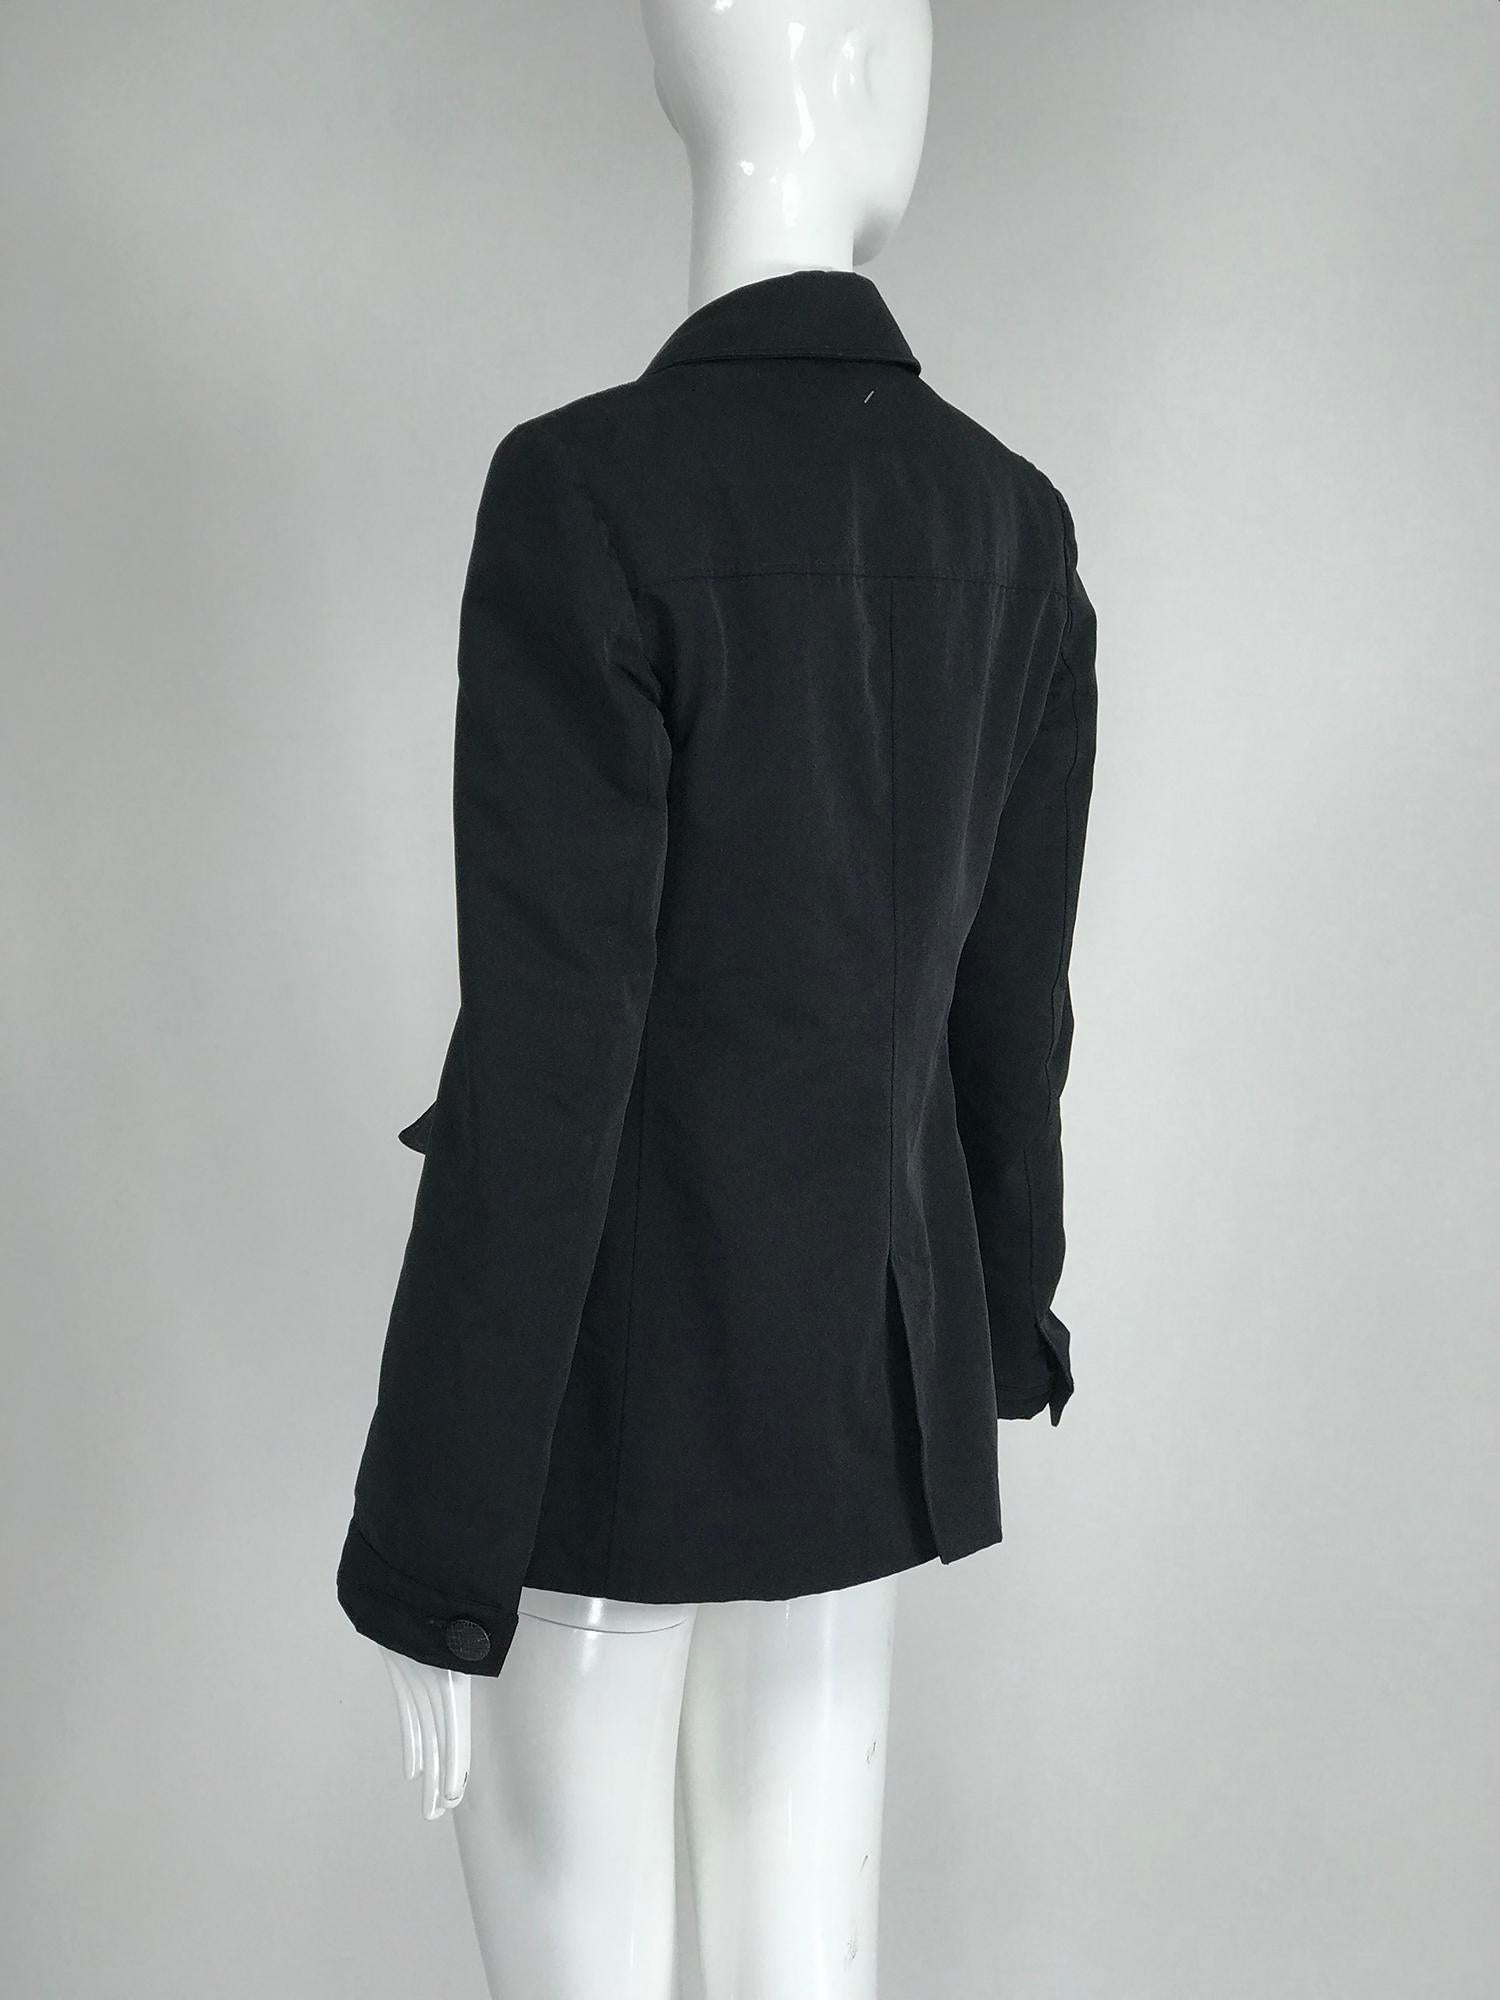 Giorgio Armani Collezioni Black Nylon Single Breasted Riding Jacket 1